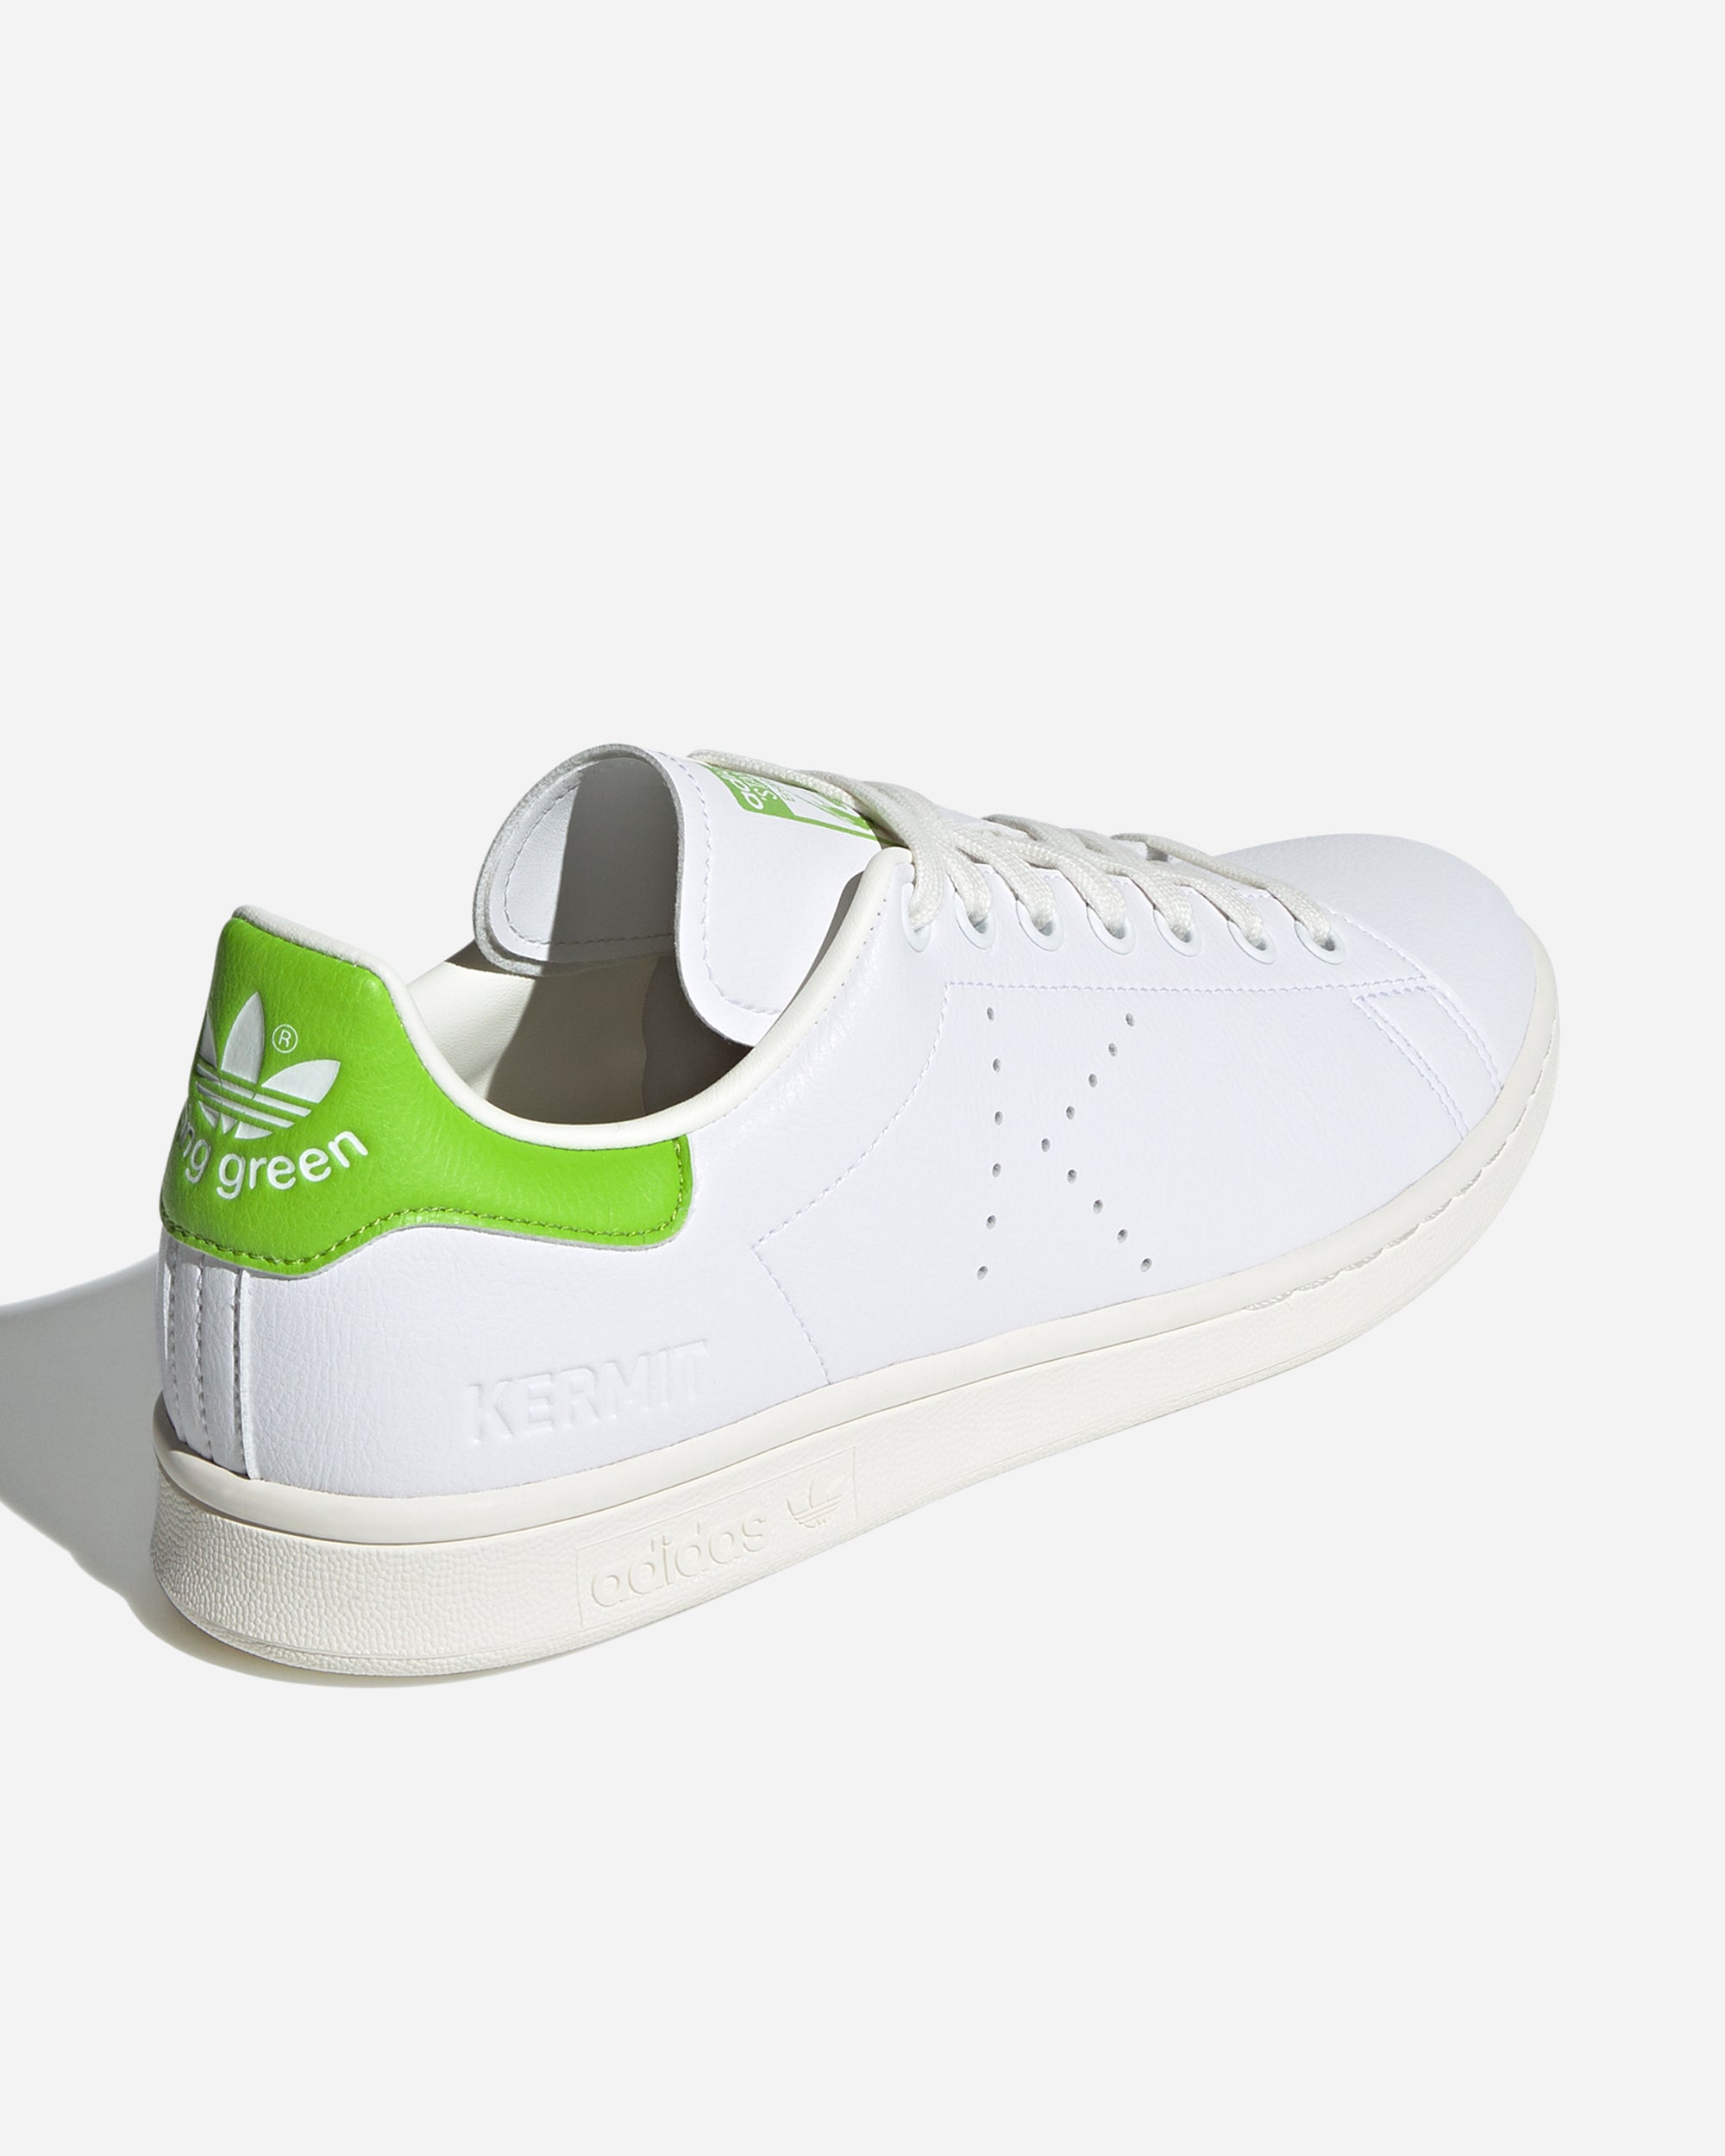 Adidas Ori Adidas x Disney Stan Smith "Kermit" Footwear White/Panton FY5460